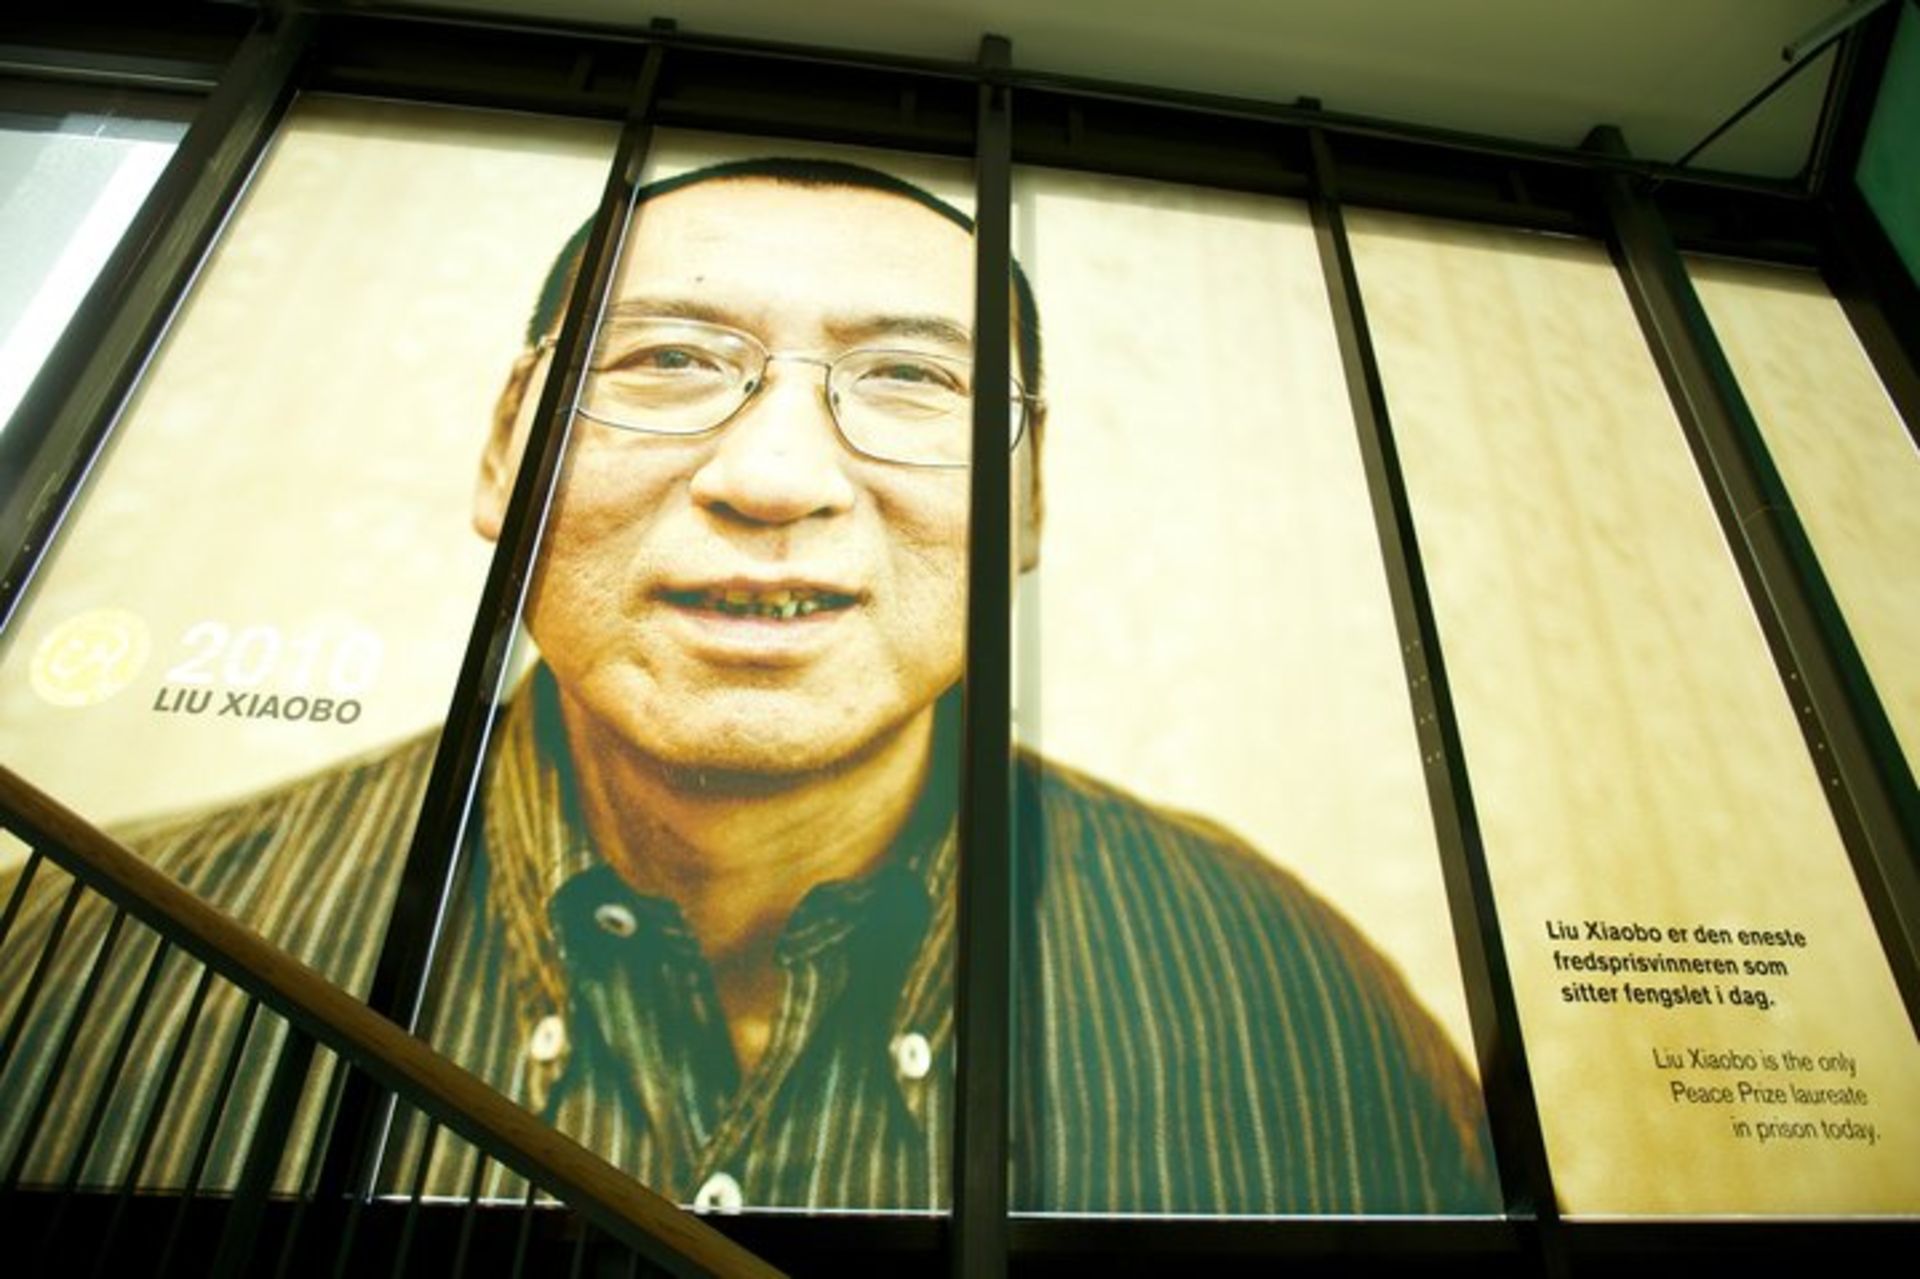 لیو شیائوبو / Liu Xiaobo